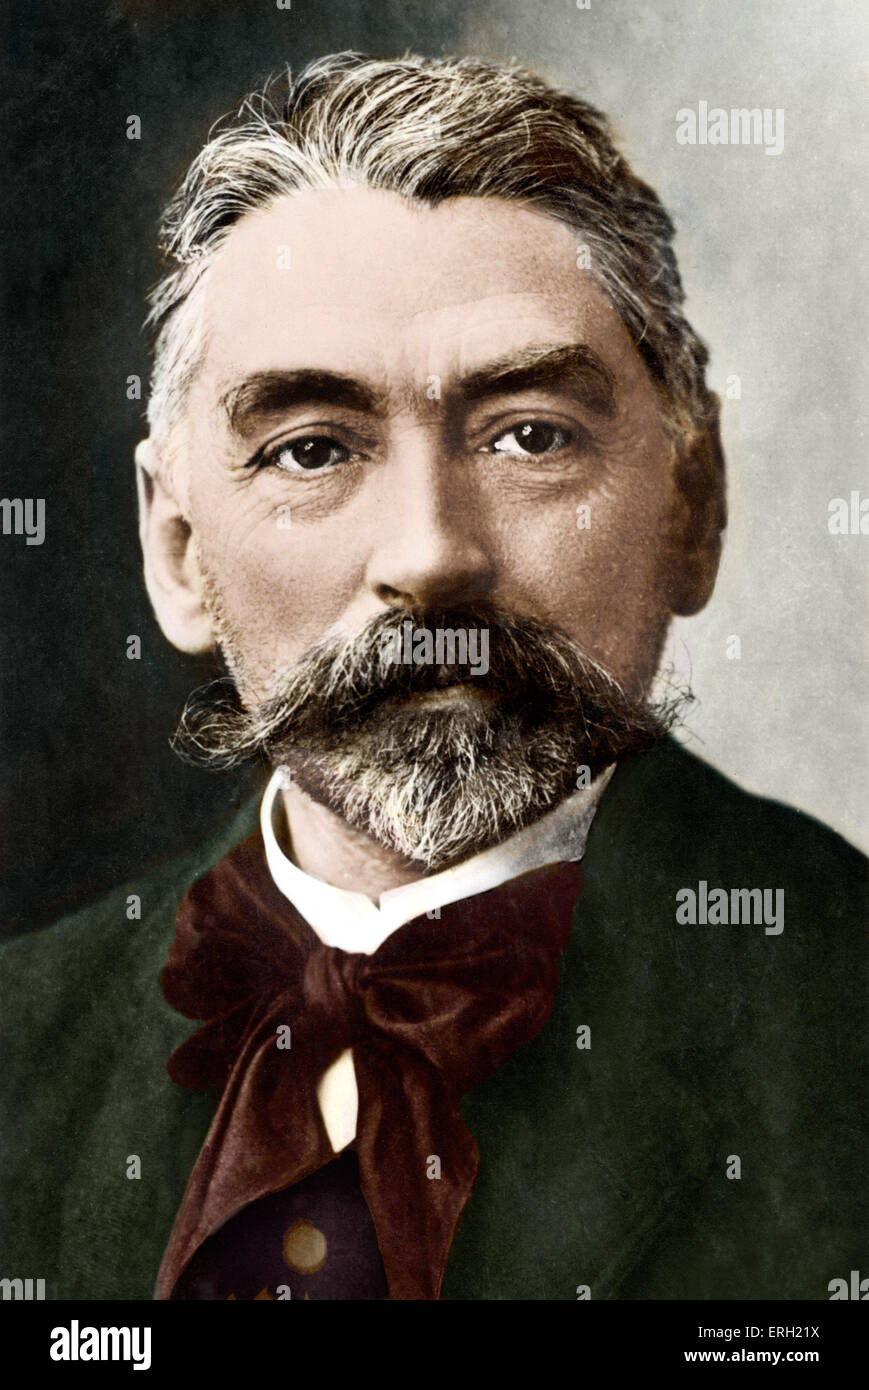 Stéphane Mallarmé französische Dichter, 1842-1898. Einem führenden Symbolisten. Farbausführung Version. Stockfoto